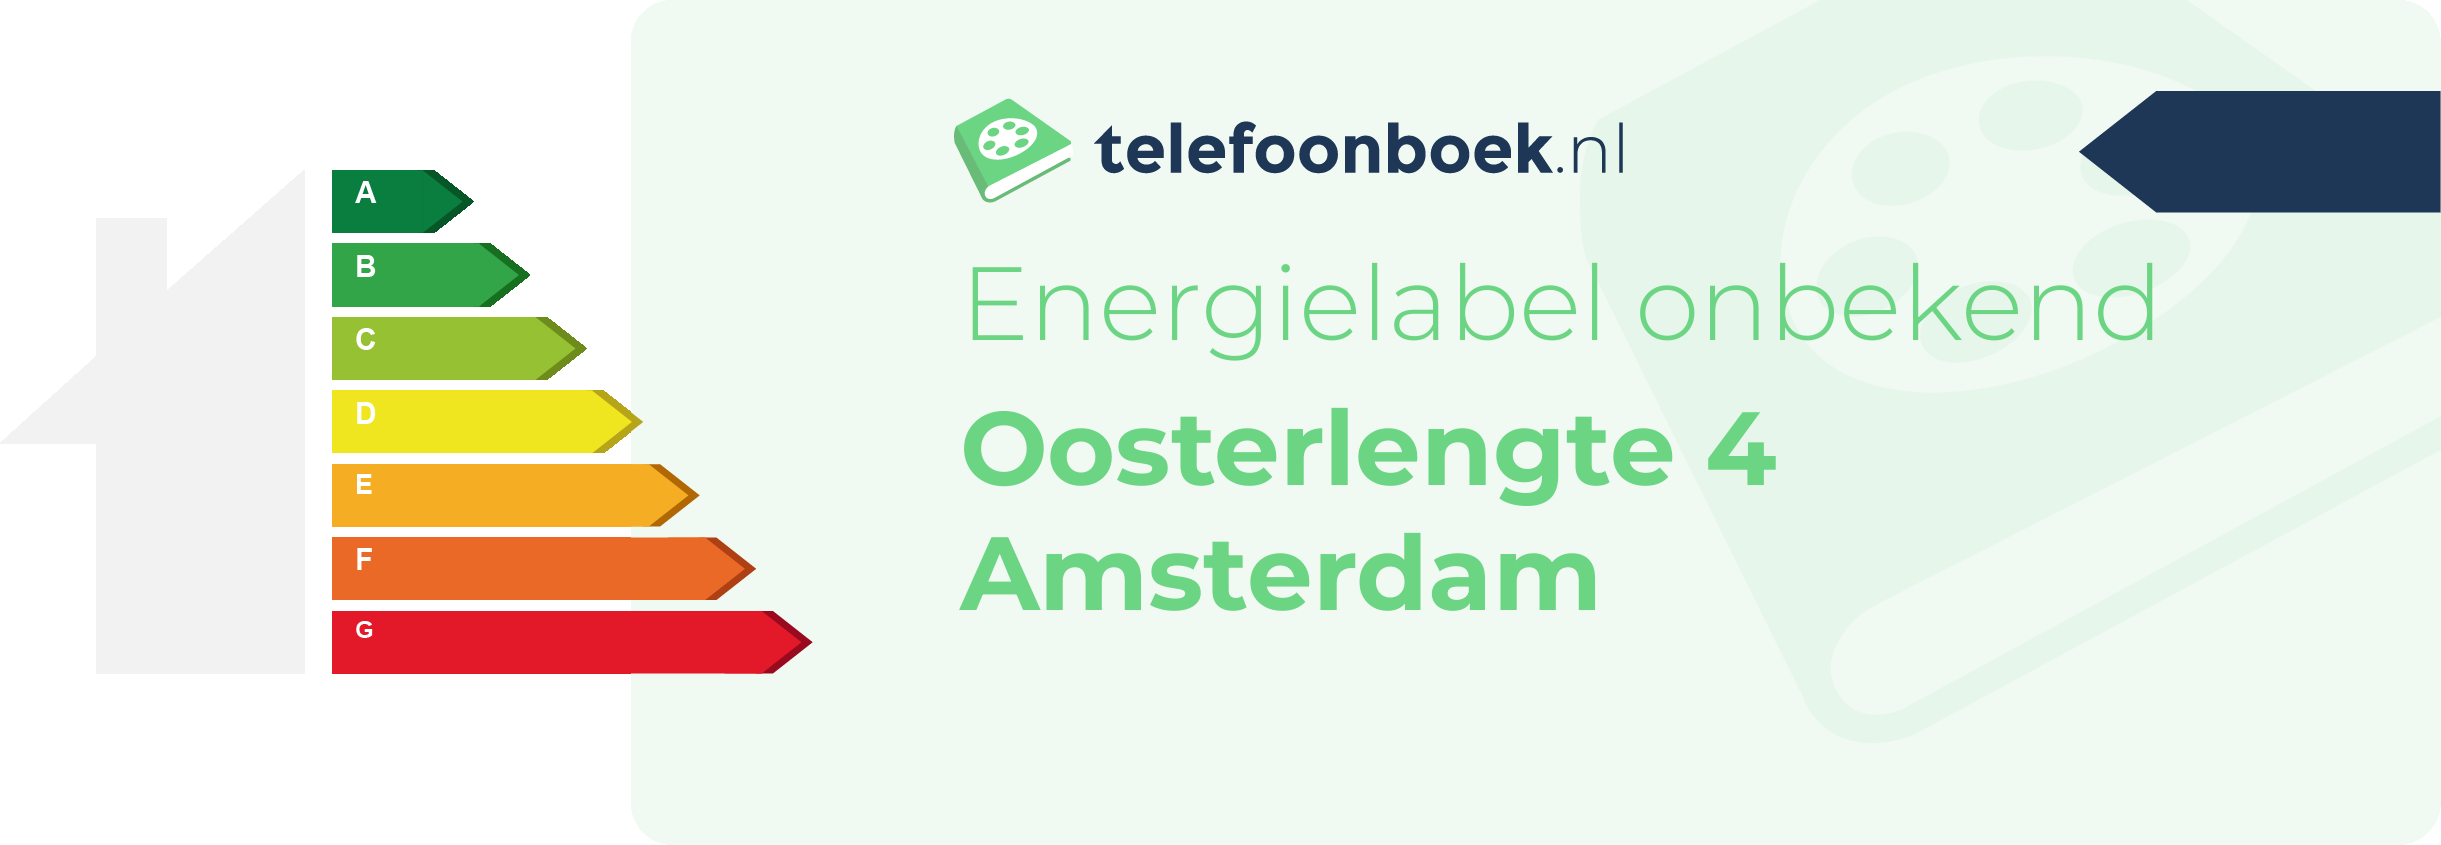 Energielabel Oosterlengte 4 Amsterdam